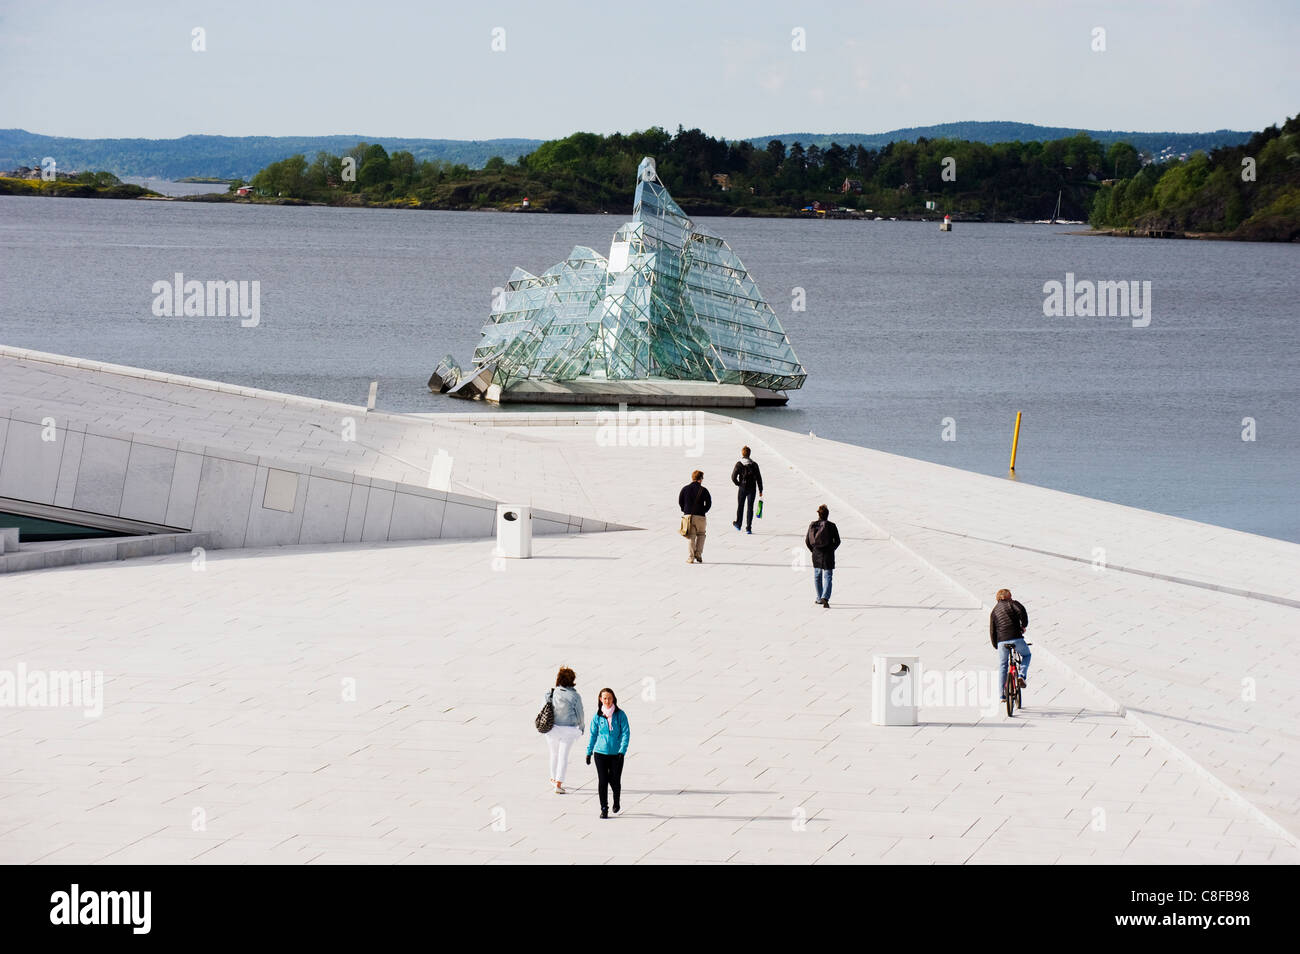 Arte flottante iceberg sul lungomare in Oslofjord, Oslo, Scandinavia Foto Stock